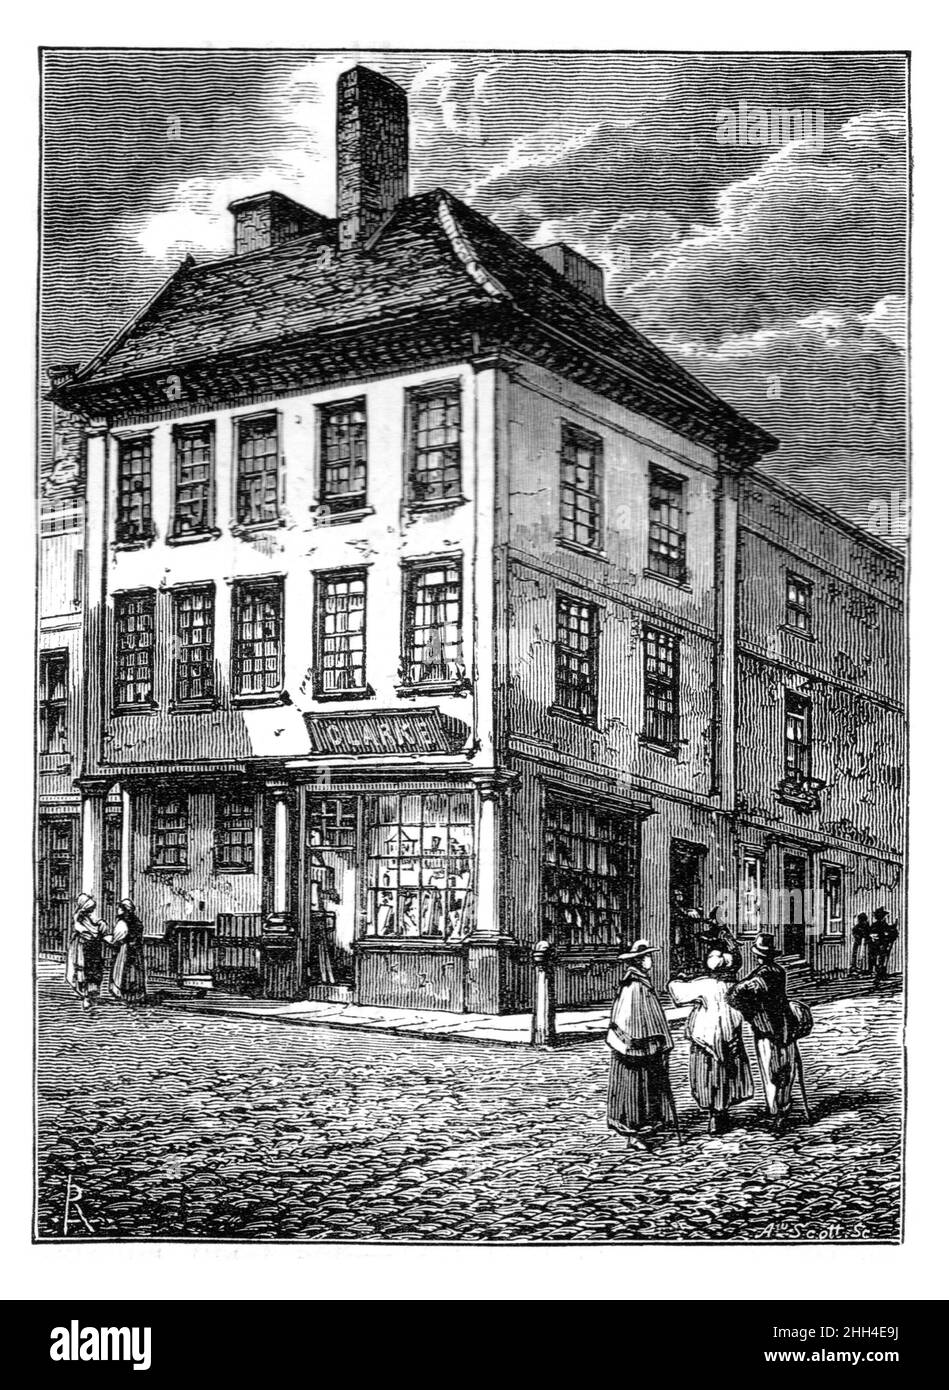 Ilustración en blanco y negro; el lugar de nacimiento del Dr. Samuel Johnson, poeta inglés, dramaturgo, ensayista y lexicografista, Lichfield Staffordshire (19th c Foto de stock